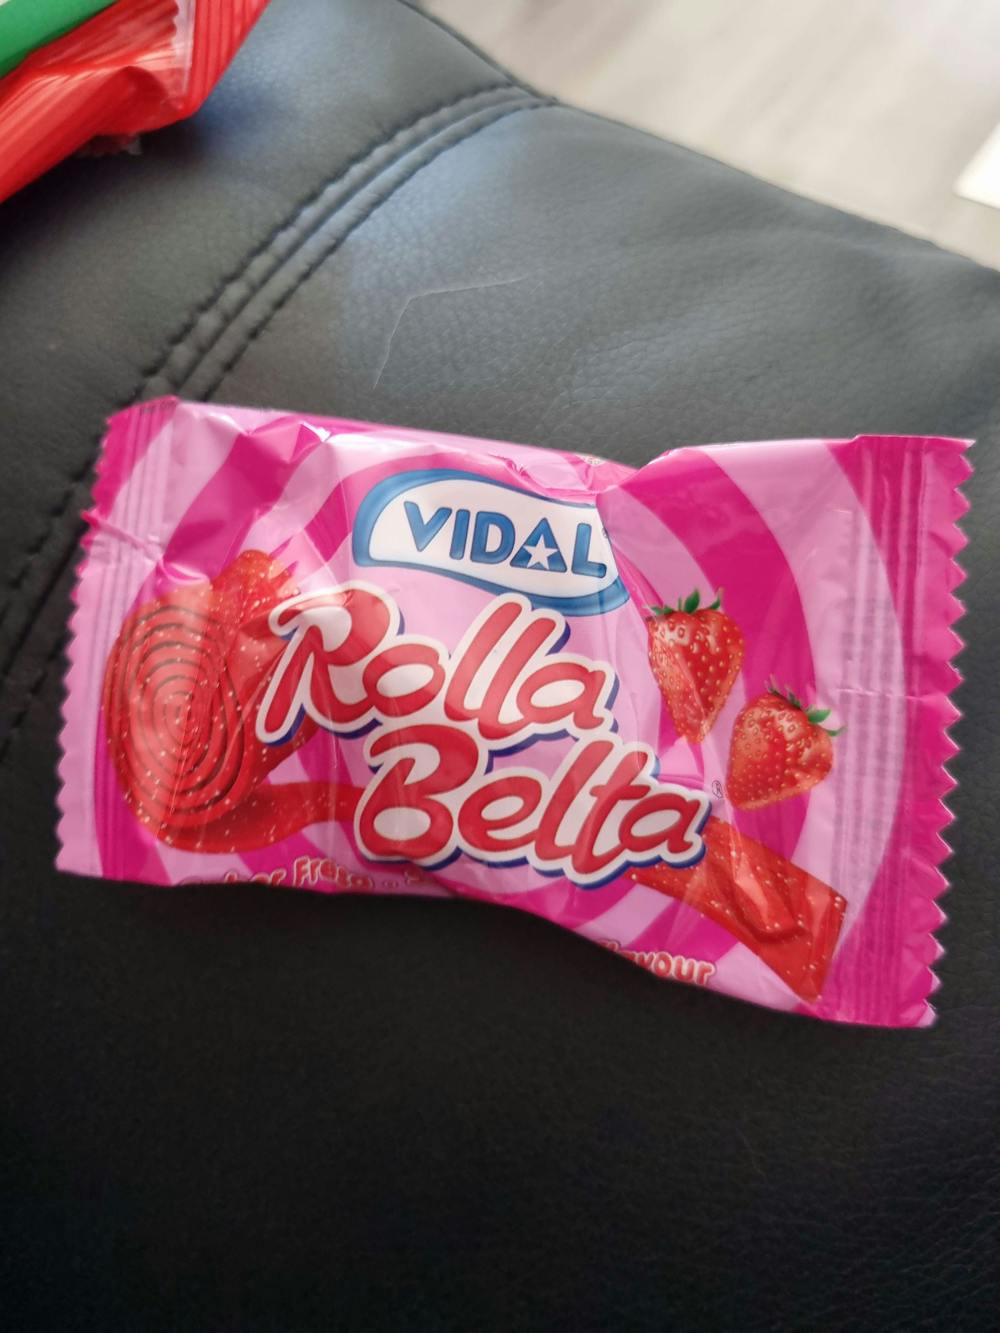 Rolla Belta, Vidal